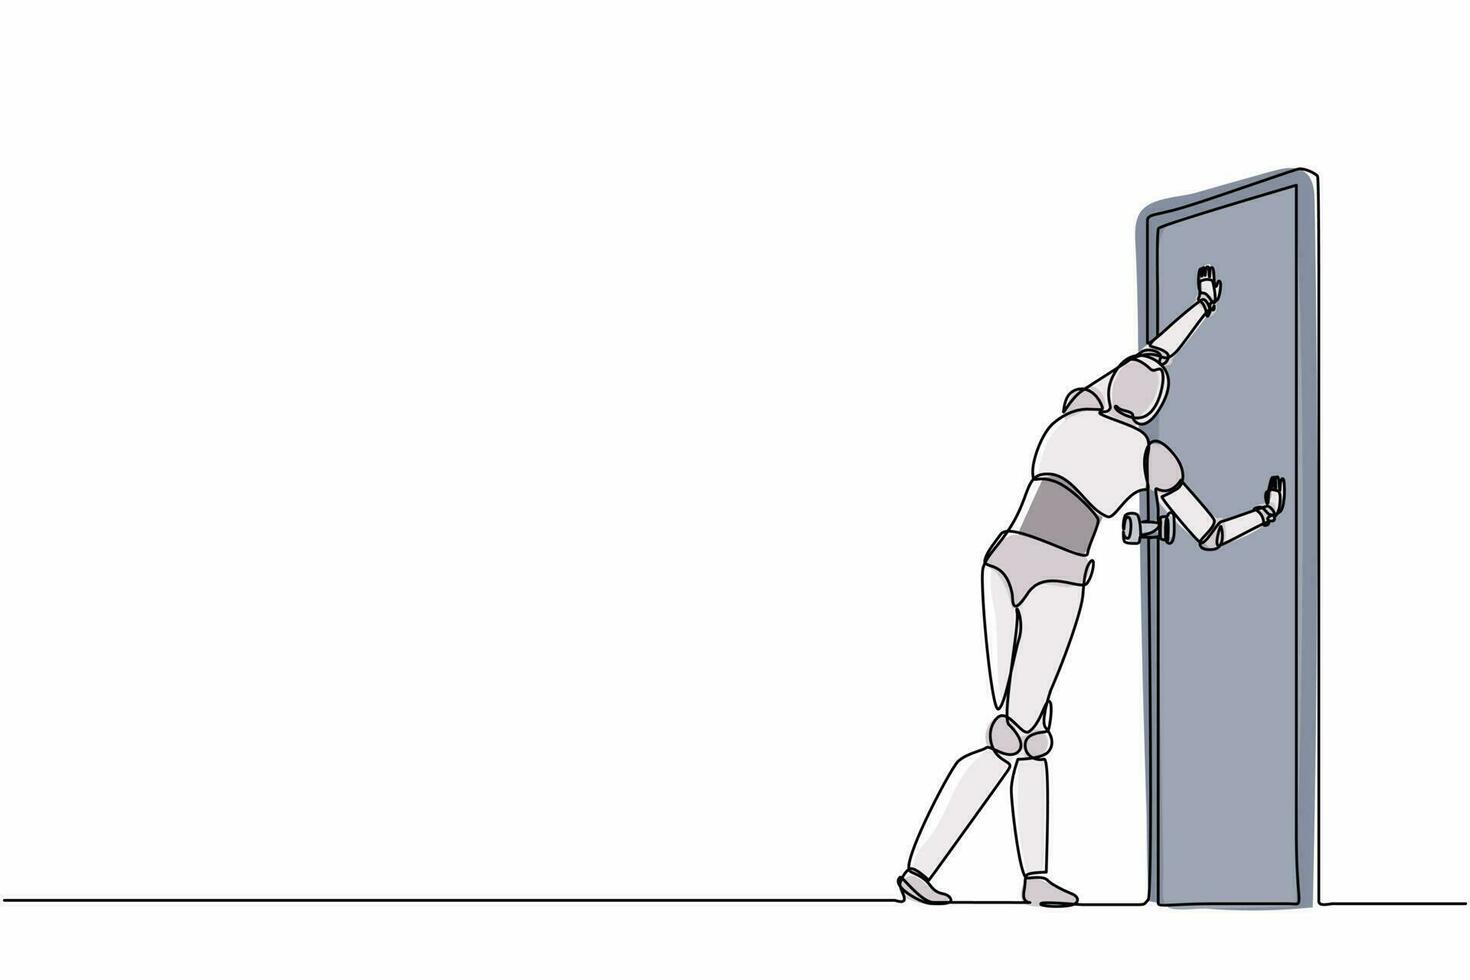 robot di disegno a linea singola in piedi e spingendo la porta chiusa. sviluppo tecnologico futuro. intelligenza artificiale e processo di apprendimento automatico. illustrazione grafica vettoriale di progettazione di linea continua